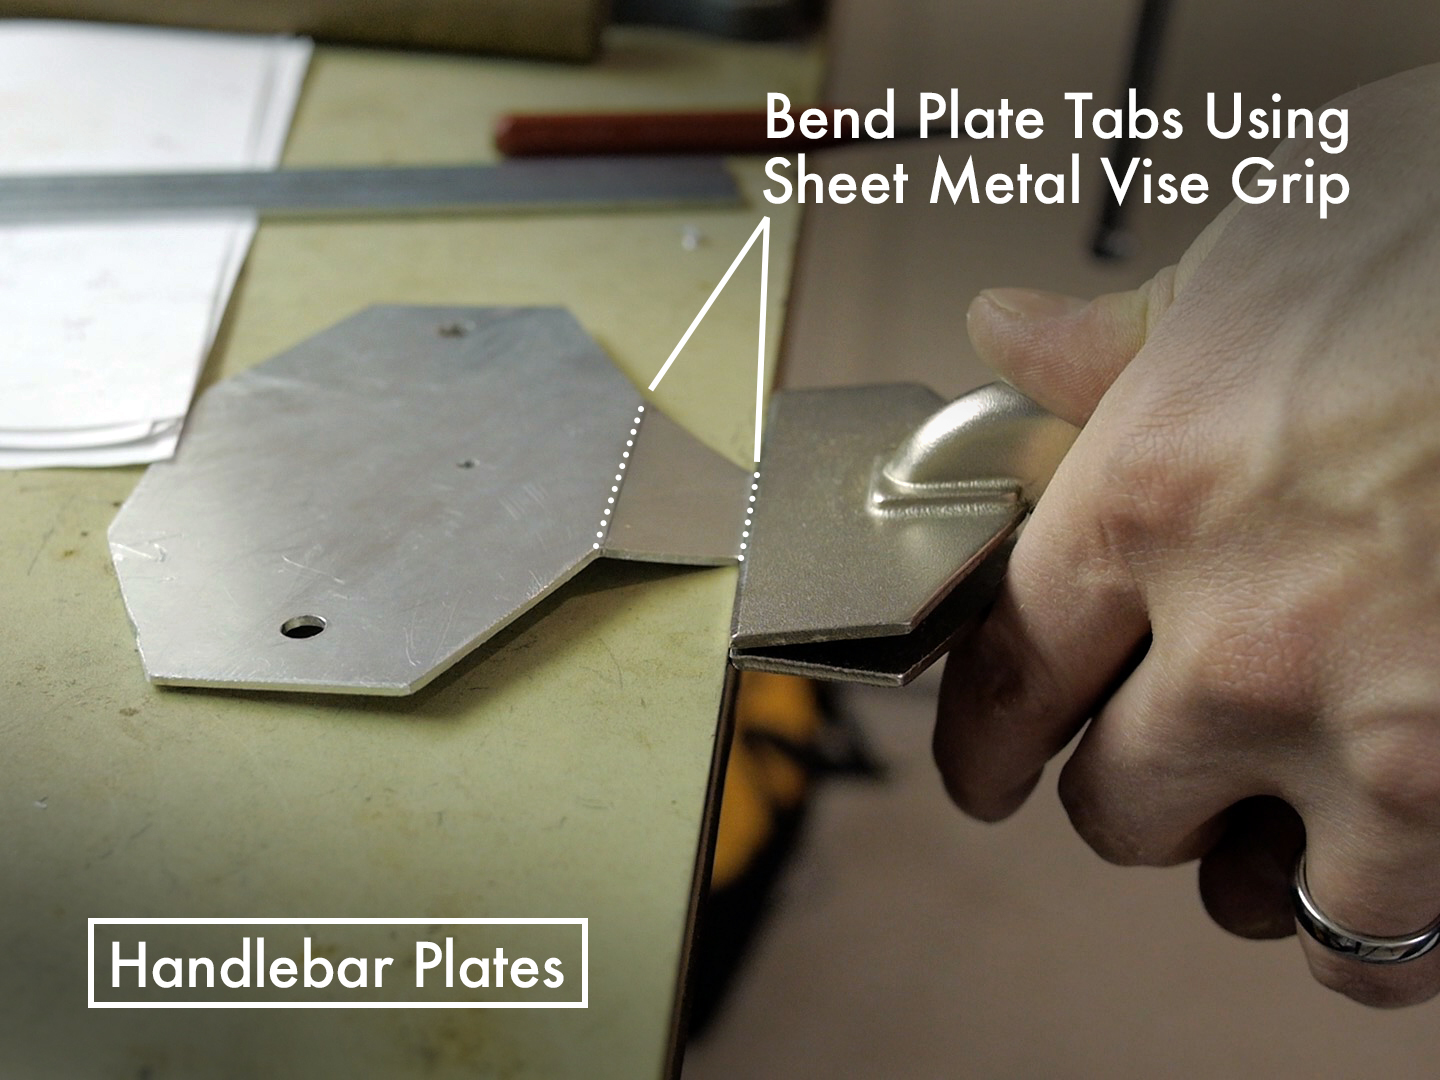 Bending of the Handlebar Plates.jpg